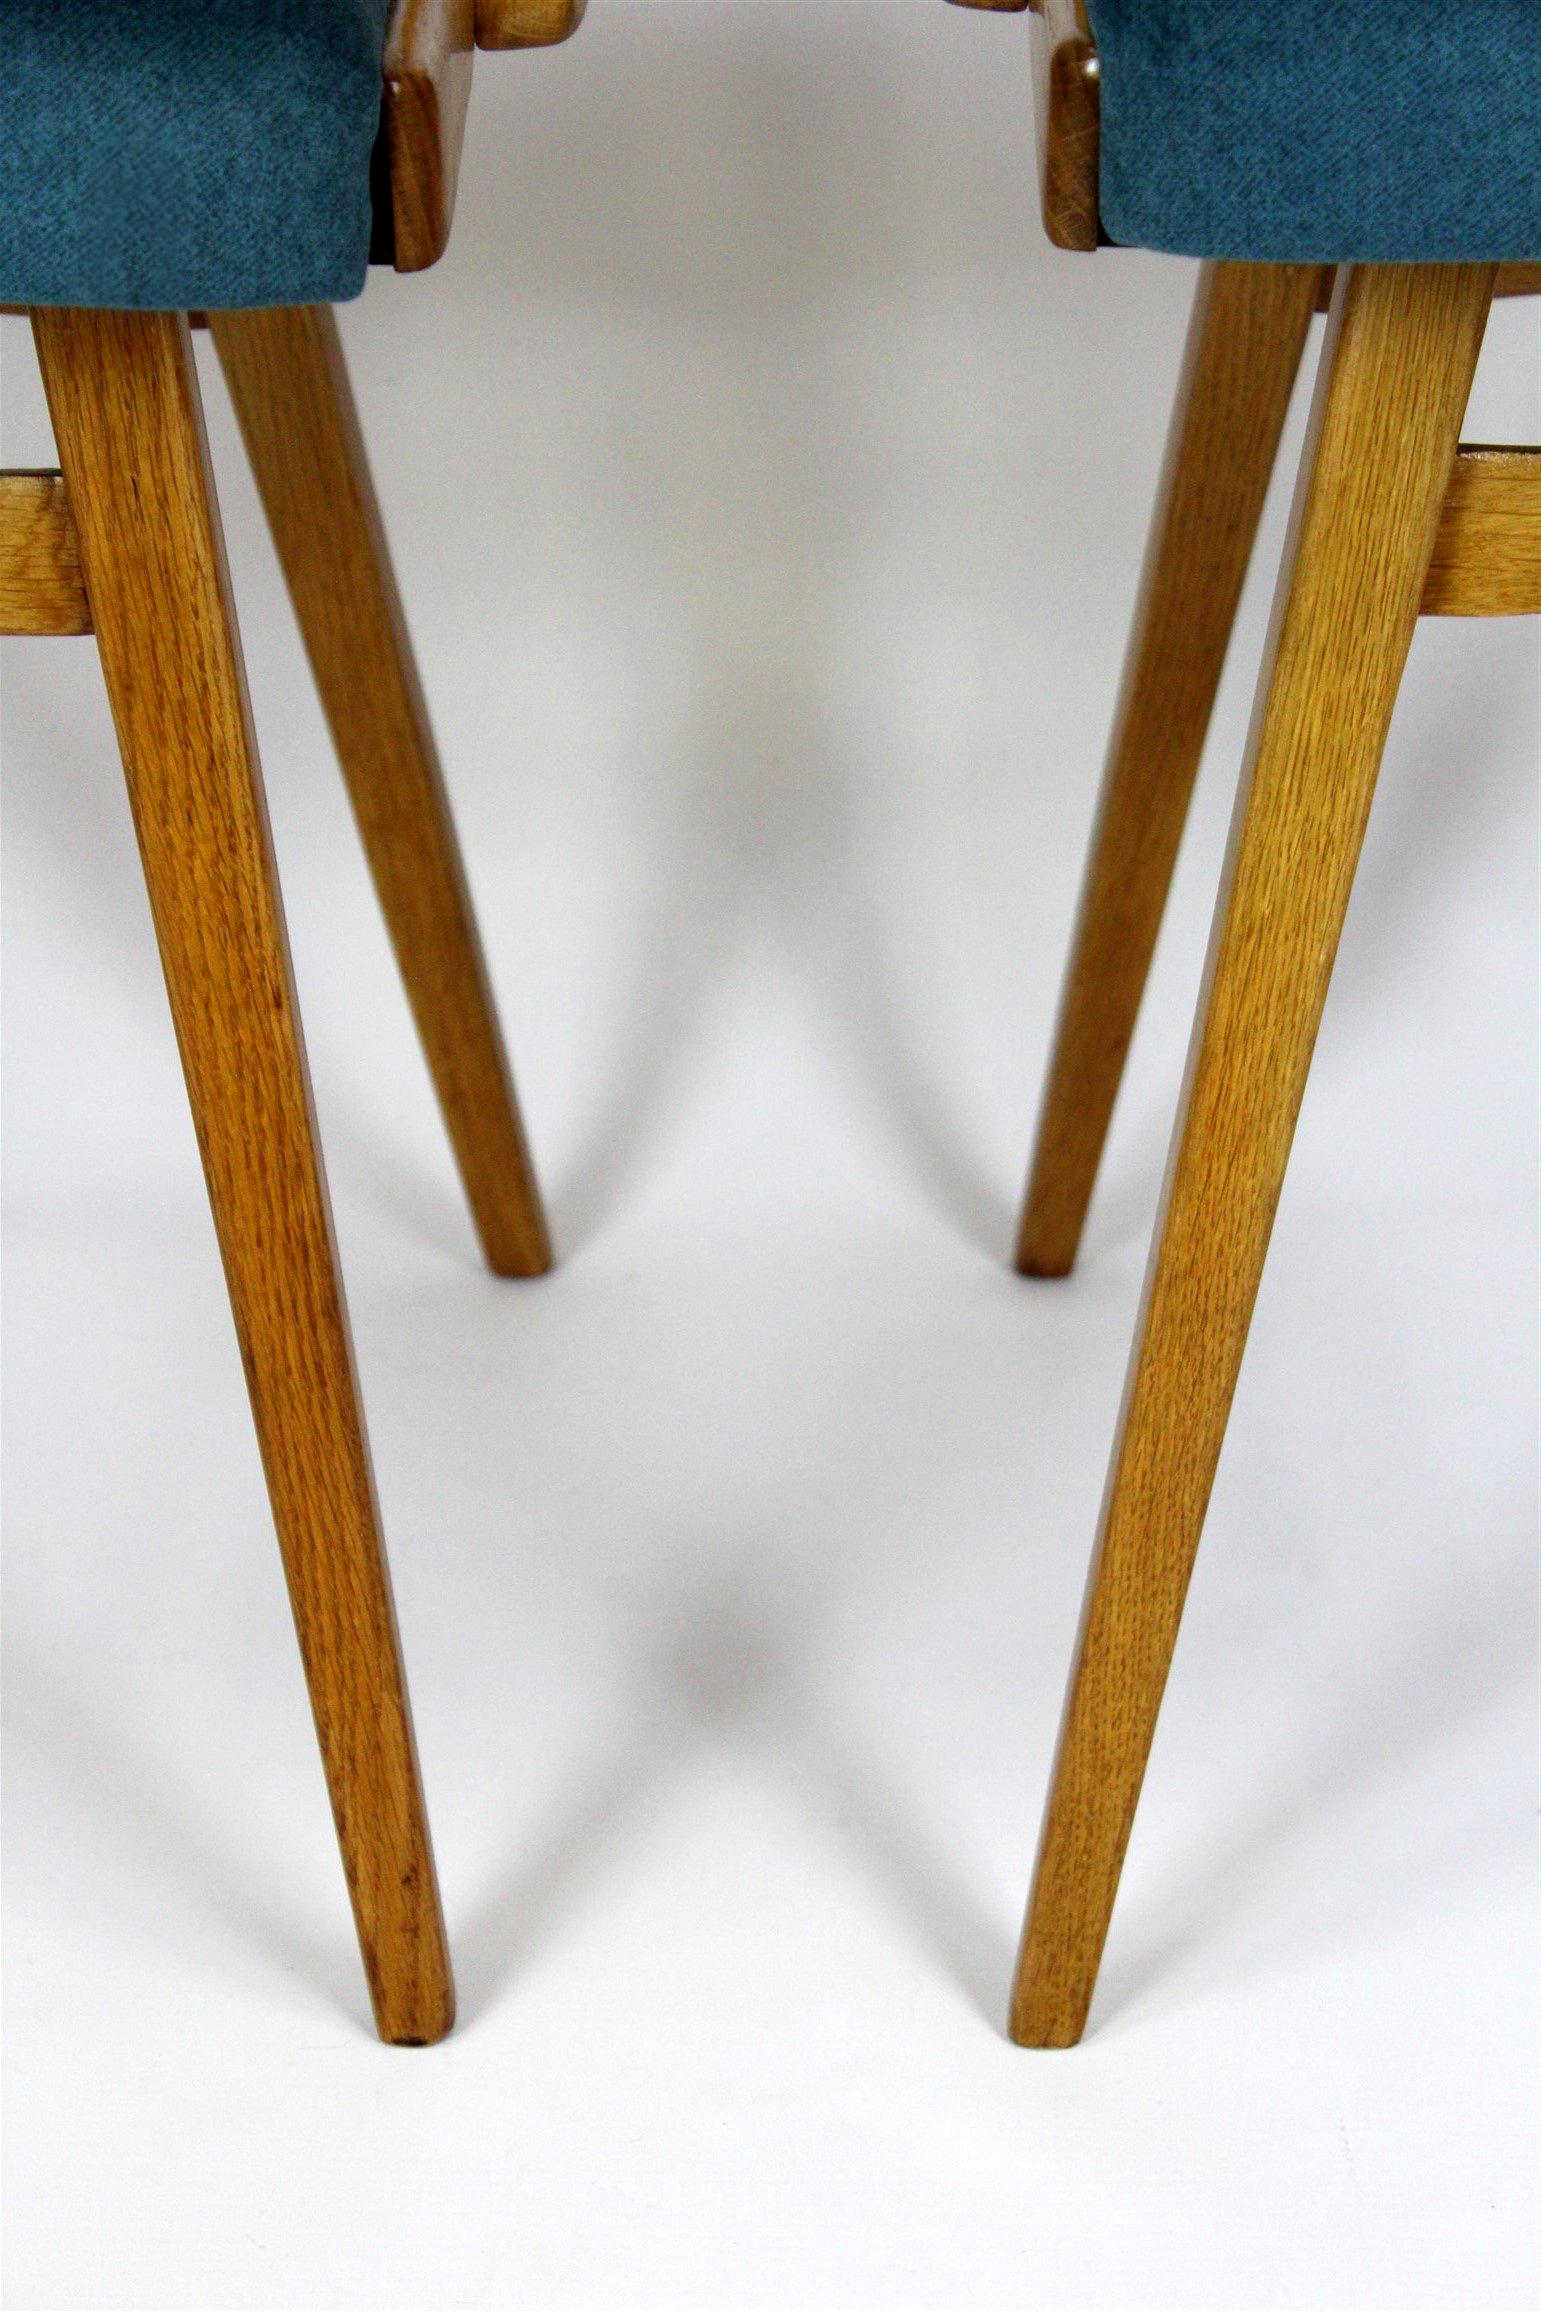 
Un ensemble de quatre chaises en chêne fabriquées par Interi Praha dans les années 1960. Les chaises ont été entièrement restaurées, laquées dans une finition satinée, tapissées dans un nouveau tissu de haute qualité.